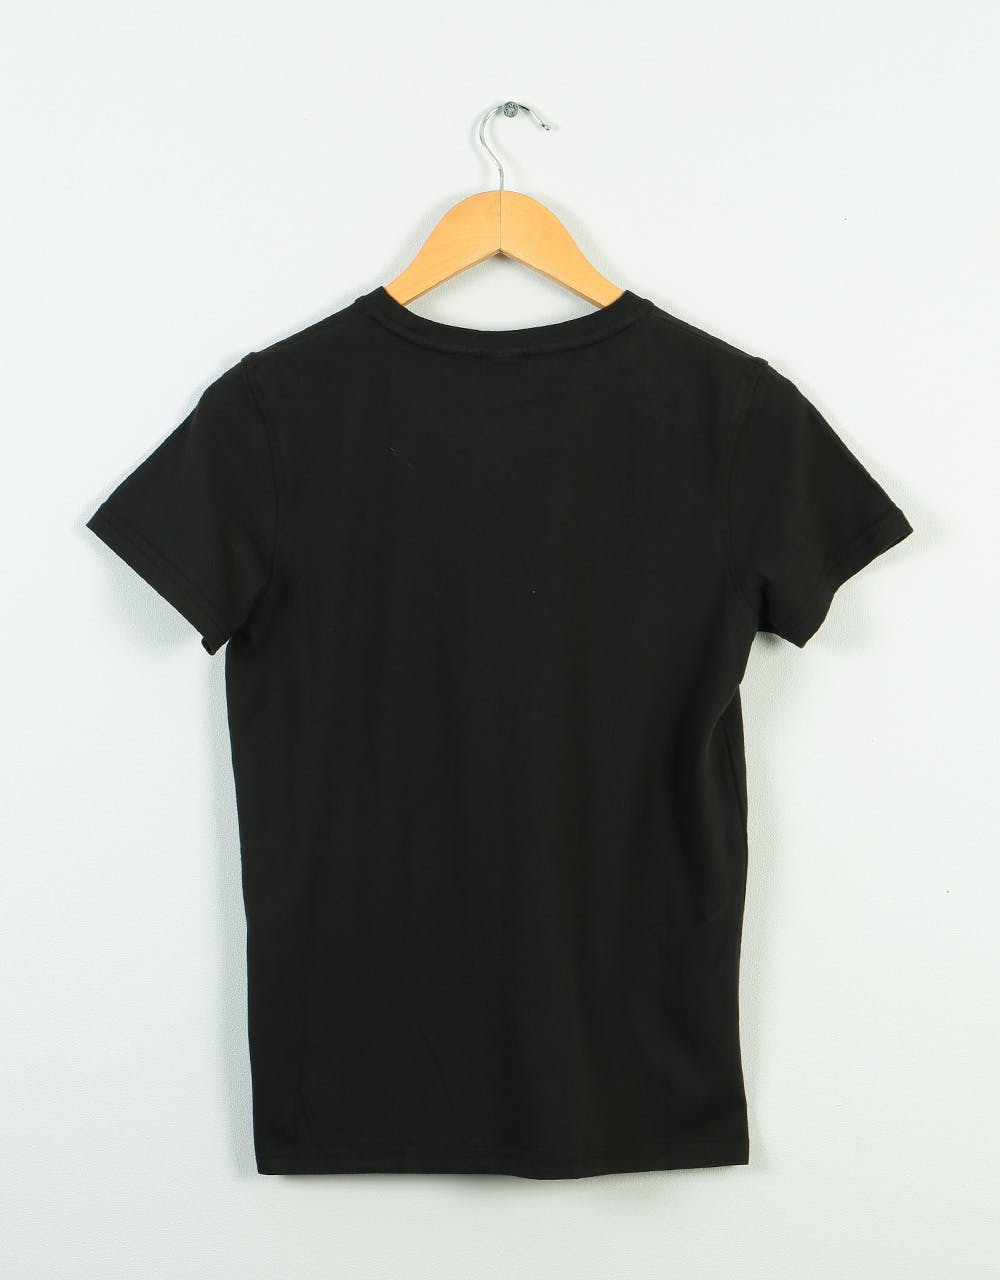 Santa Cruz Fisheye MFG Kids T-Shirt - Black